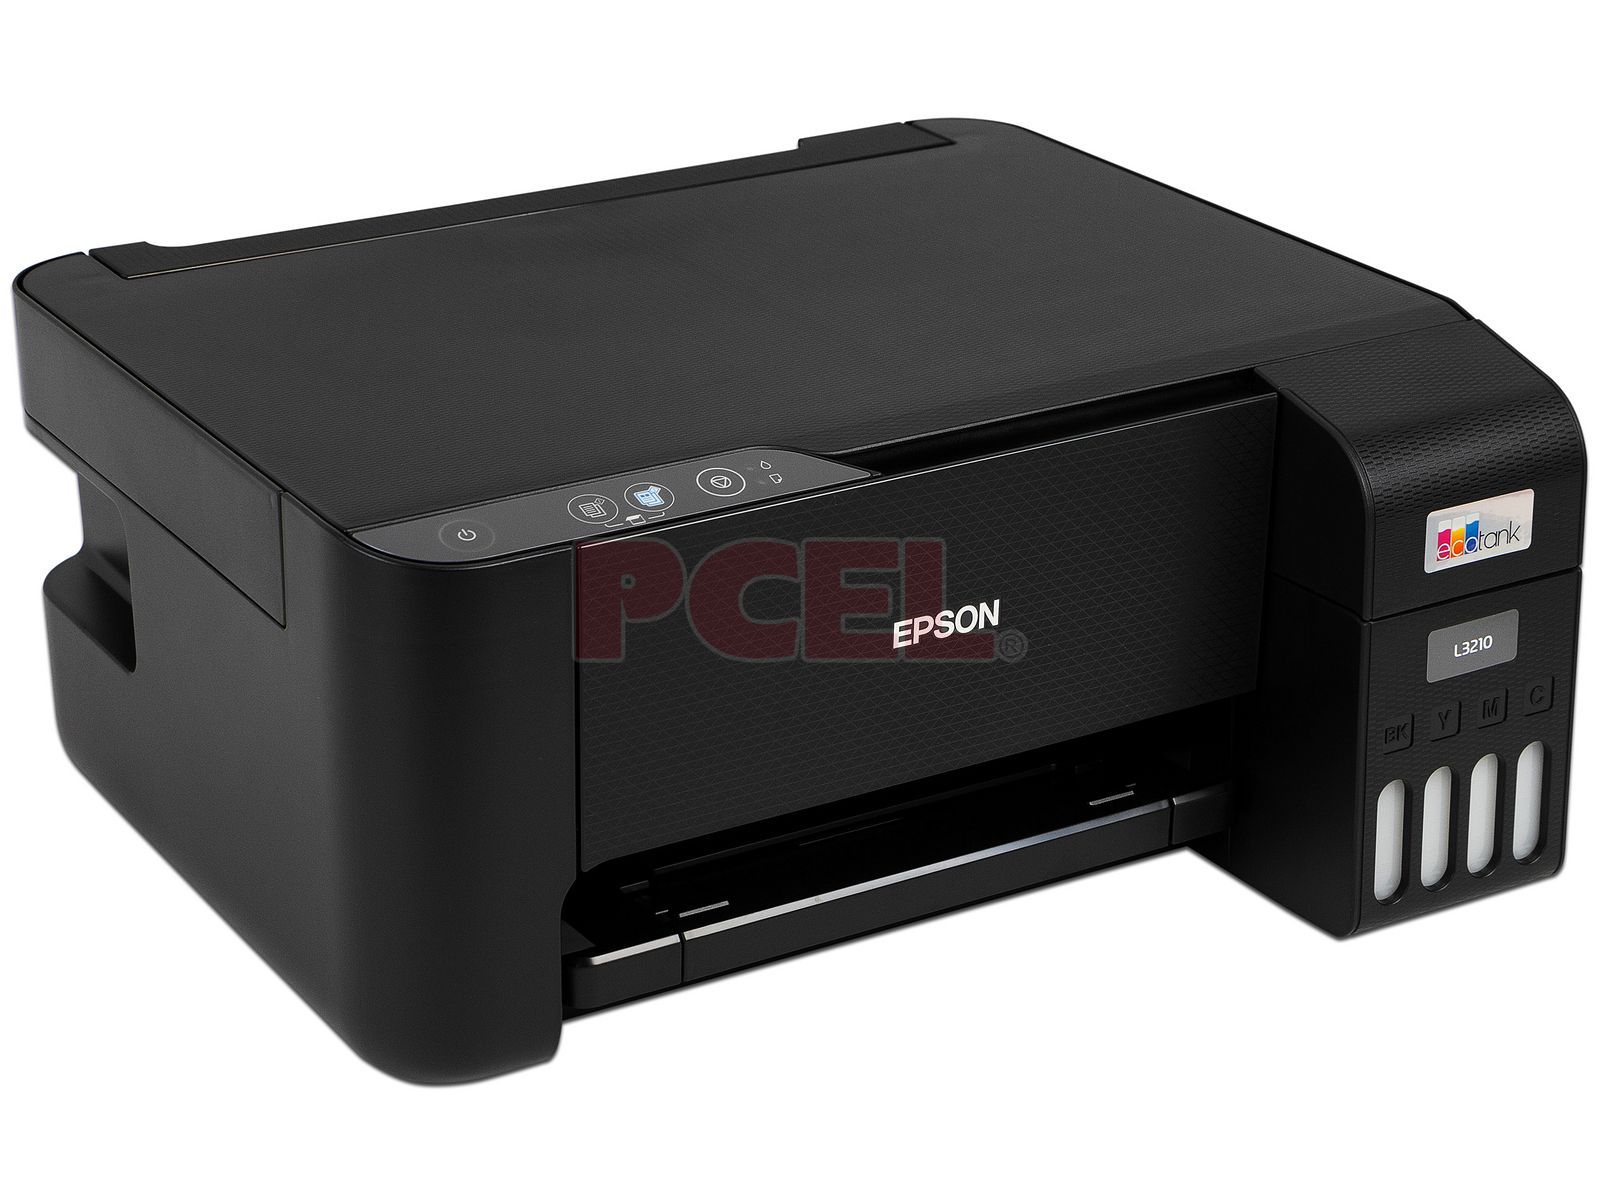 Impresora Multifuncional Epson Ecotank L3210 Inyección de Tinta